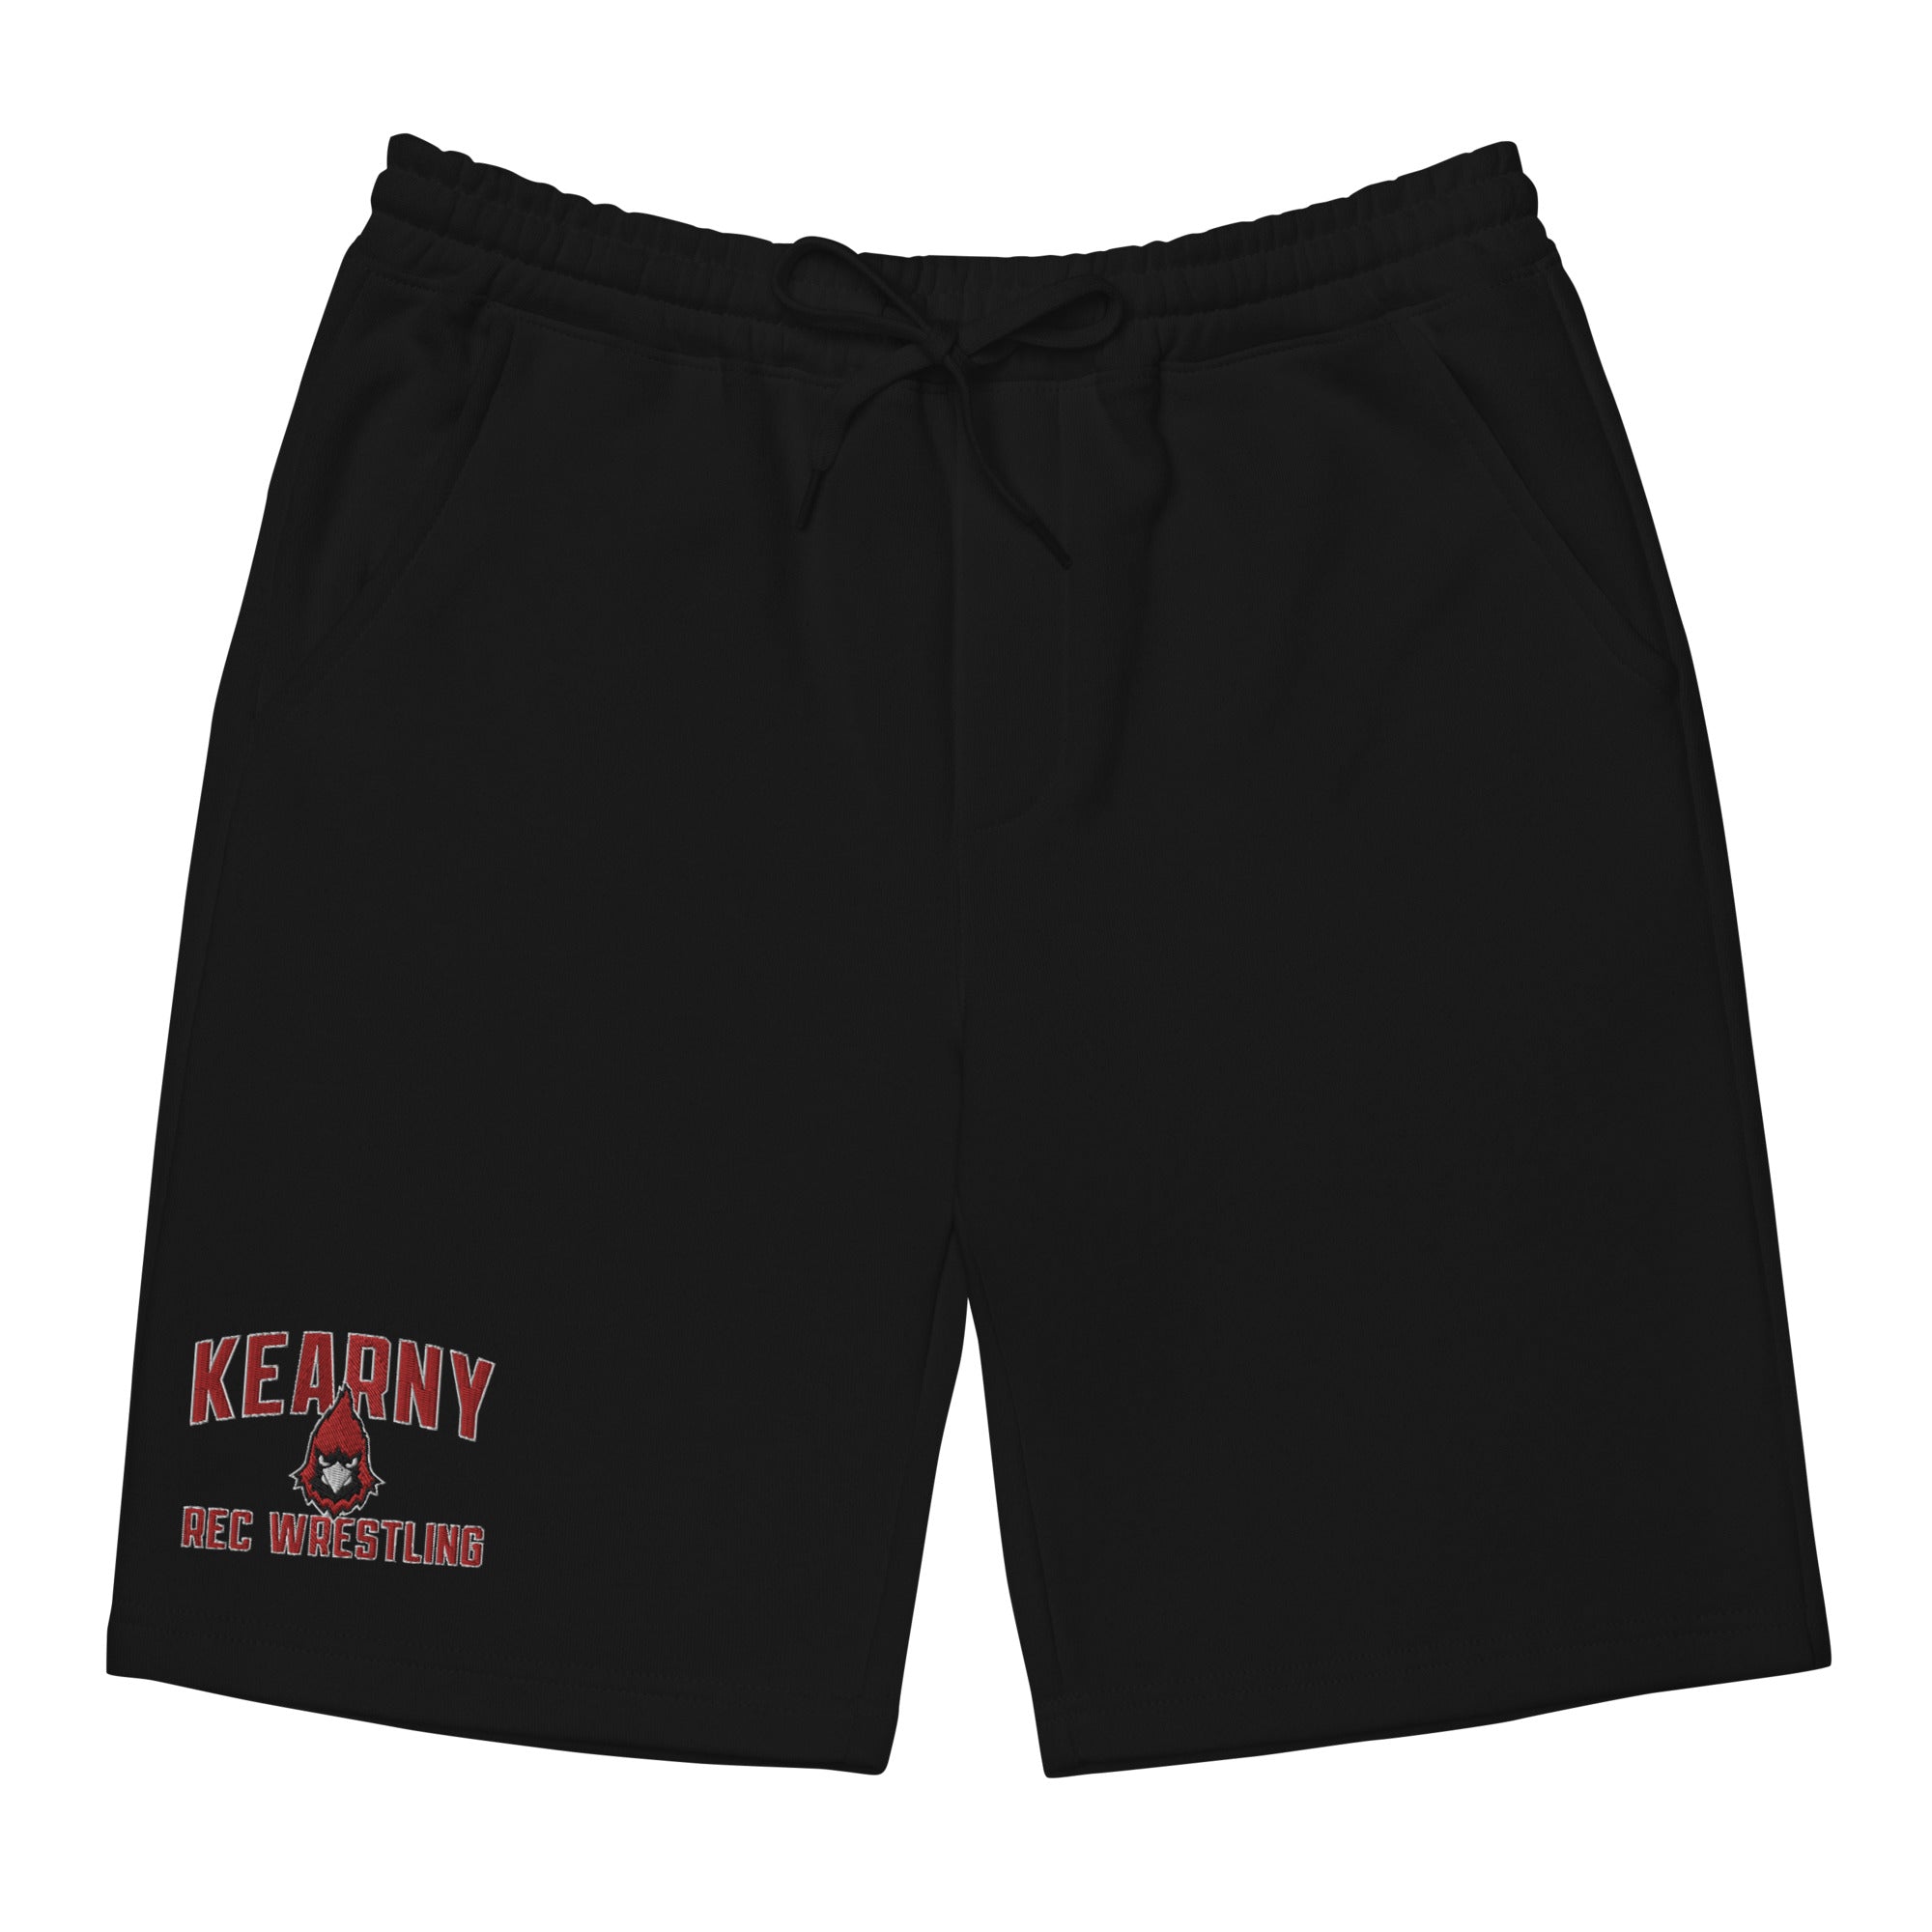 Kearny Rec Wrestling Mens Fleece Shorts